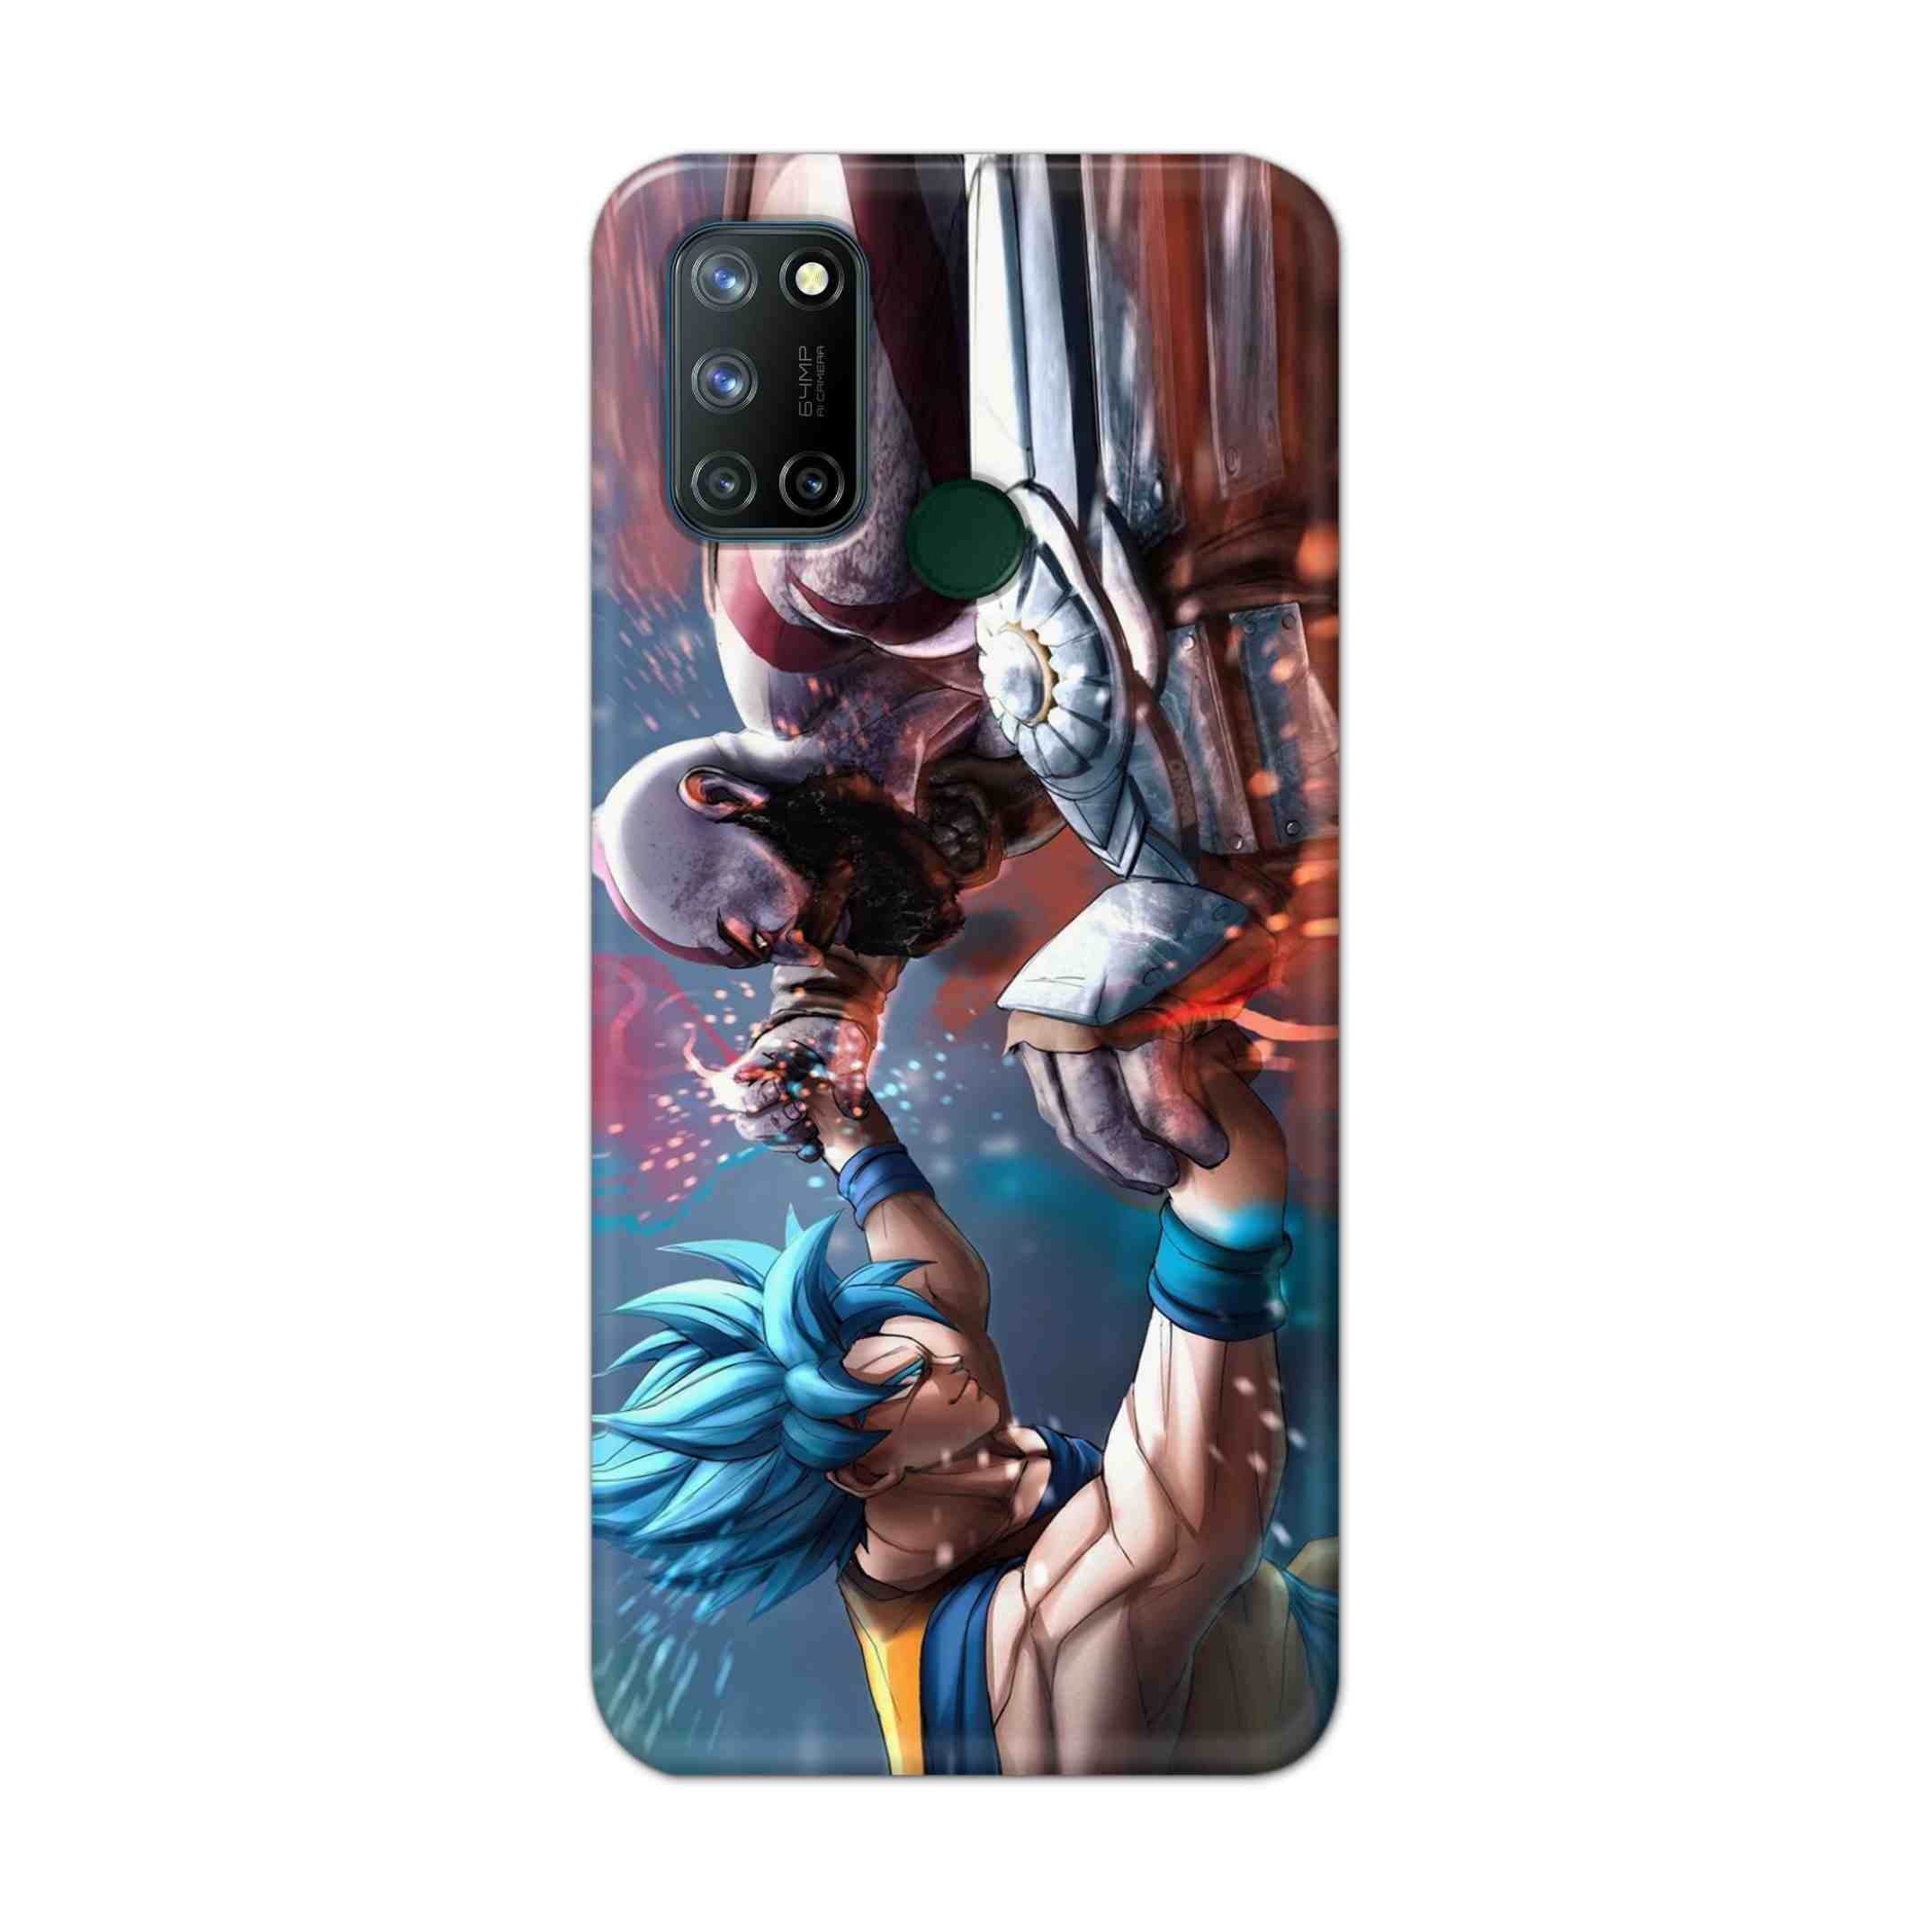 Buy Goku Vs Kratos Hard Back Mobile Phone Case Cover For Realme 7i Online